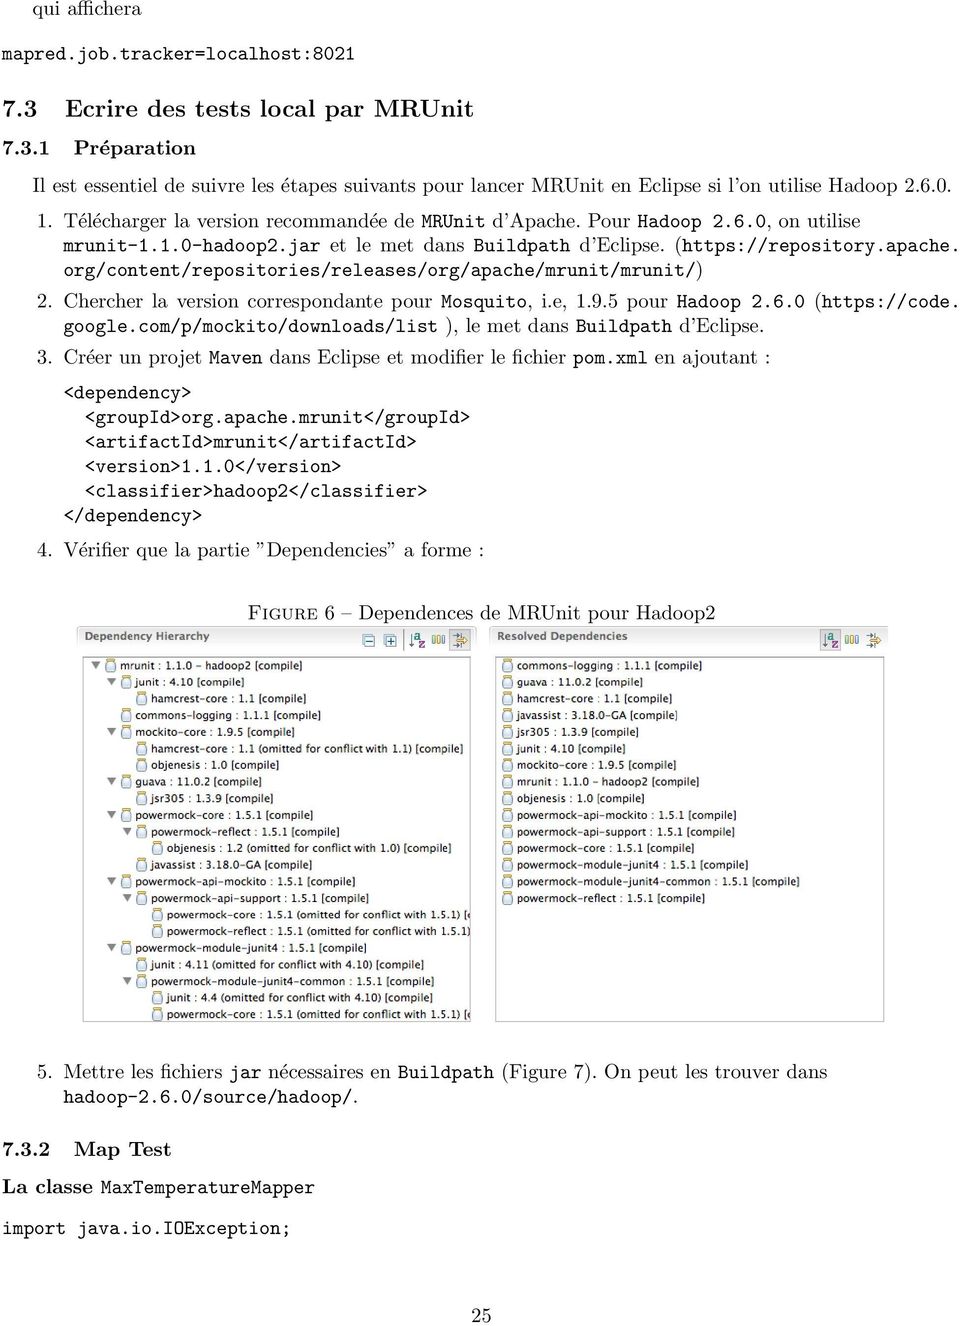 org/content/repositories/releases/org/apache/mrunit/mrunit/) 2. Chercher la version correspondante pour Mosquito, i.e, 1.9.5 pour Hadoop 2.6.0 (https://code. google.